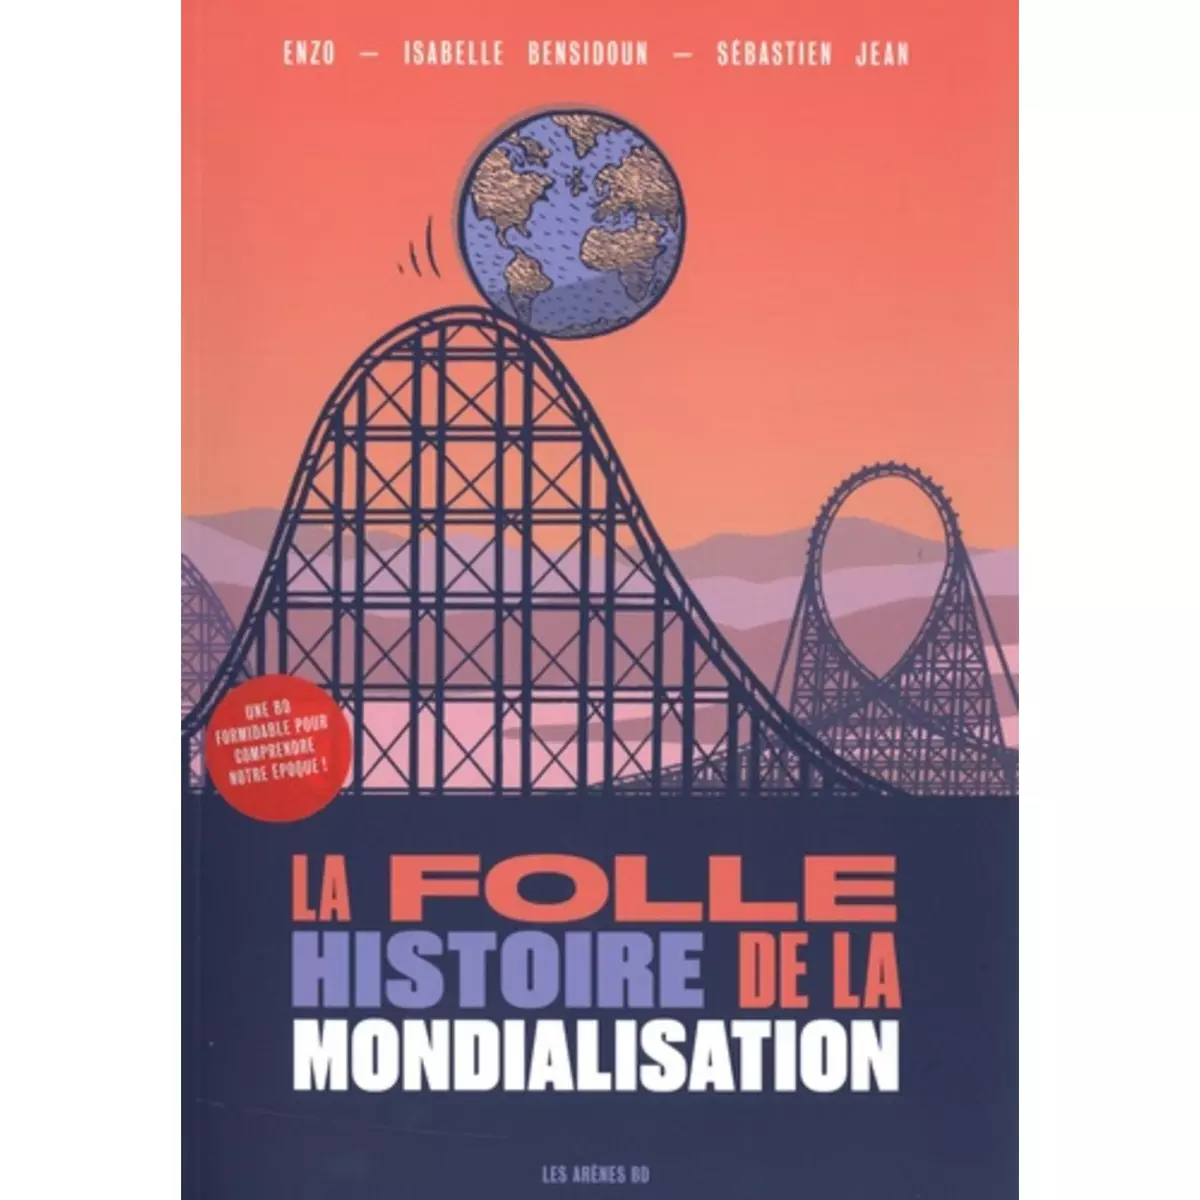  LA FOLLE HISTOIRE DE LA MONDIALISATION, Enzo